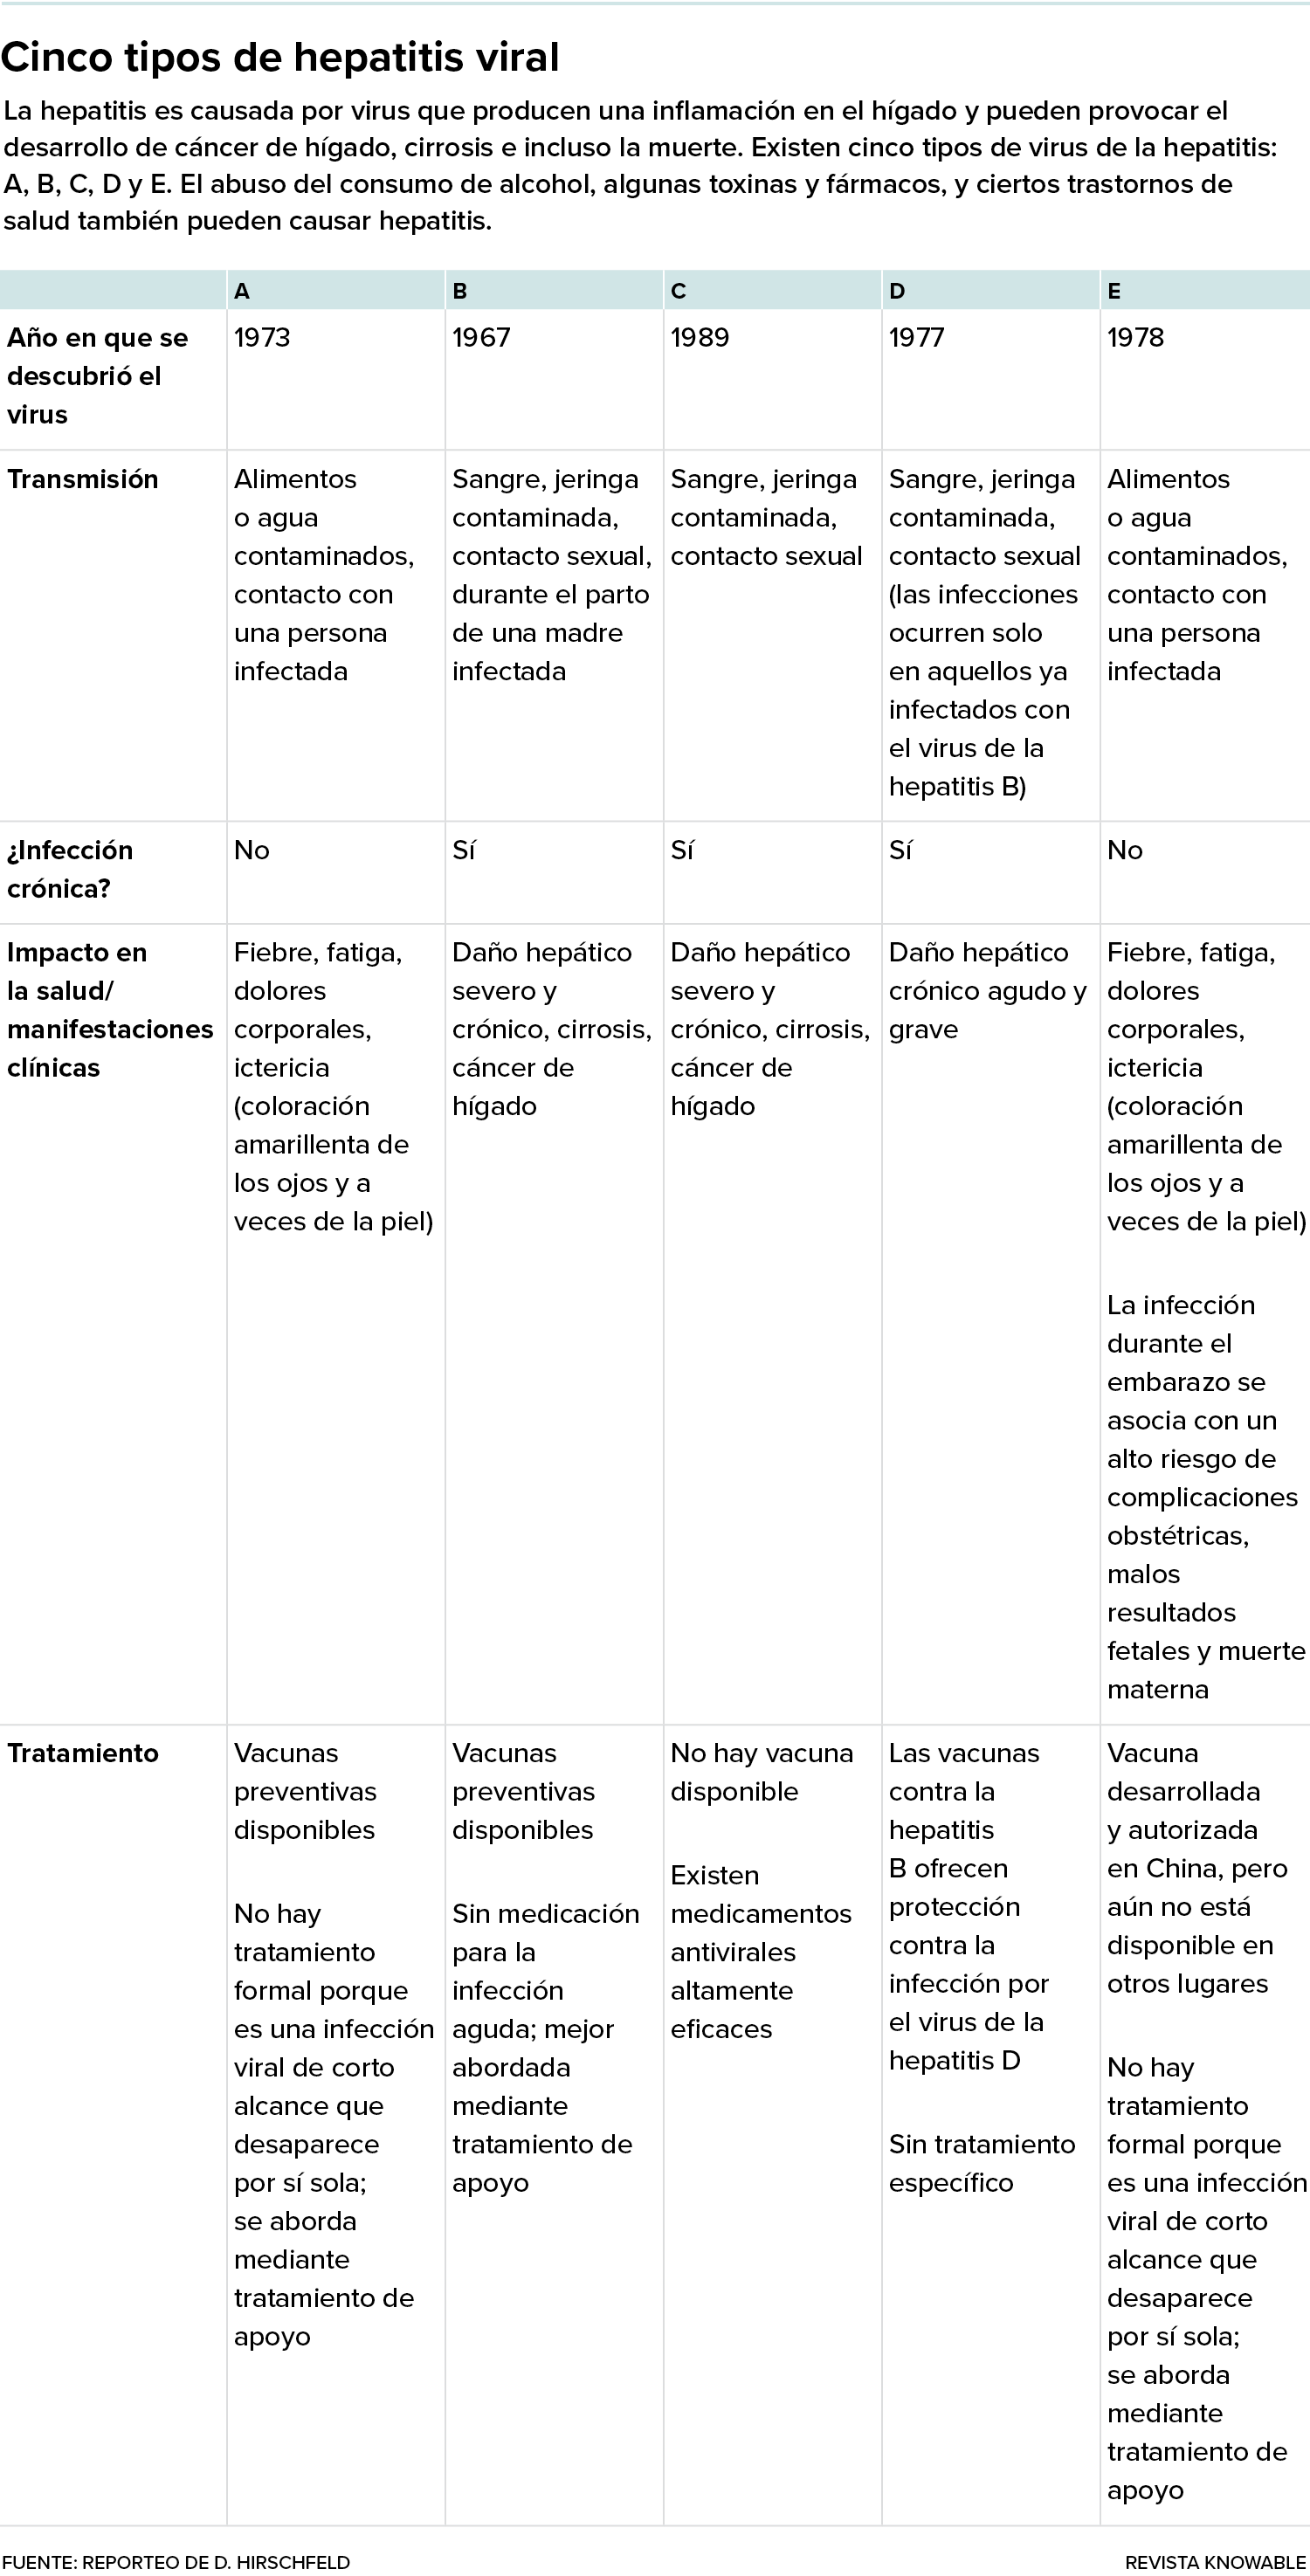 Una tabla presenta los cinco virus de la hepatitis y sus características, e incluye el estado de los tratamientos y las vacunas.